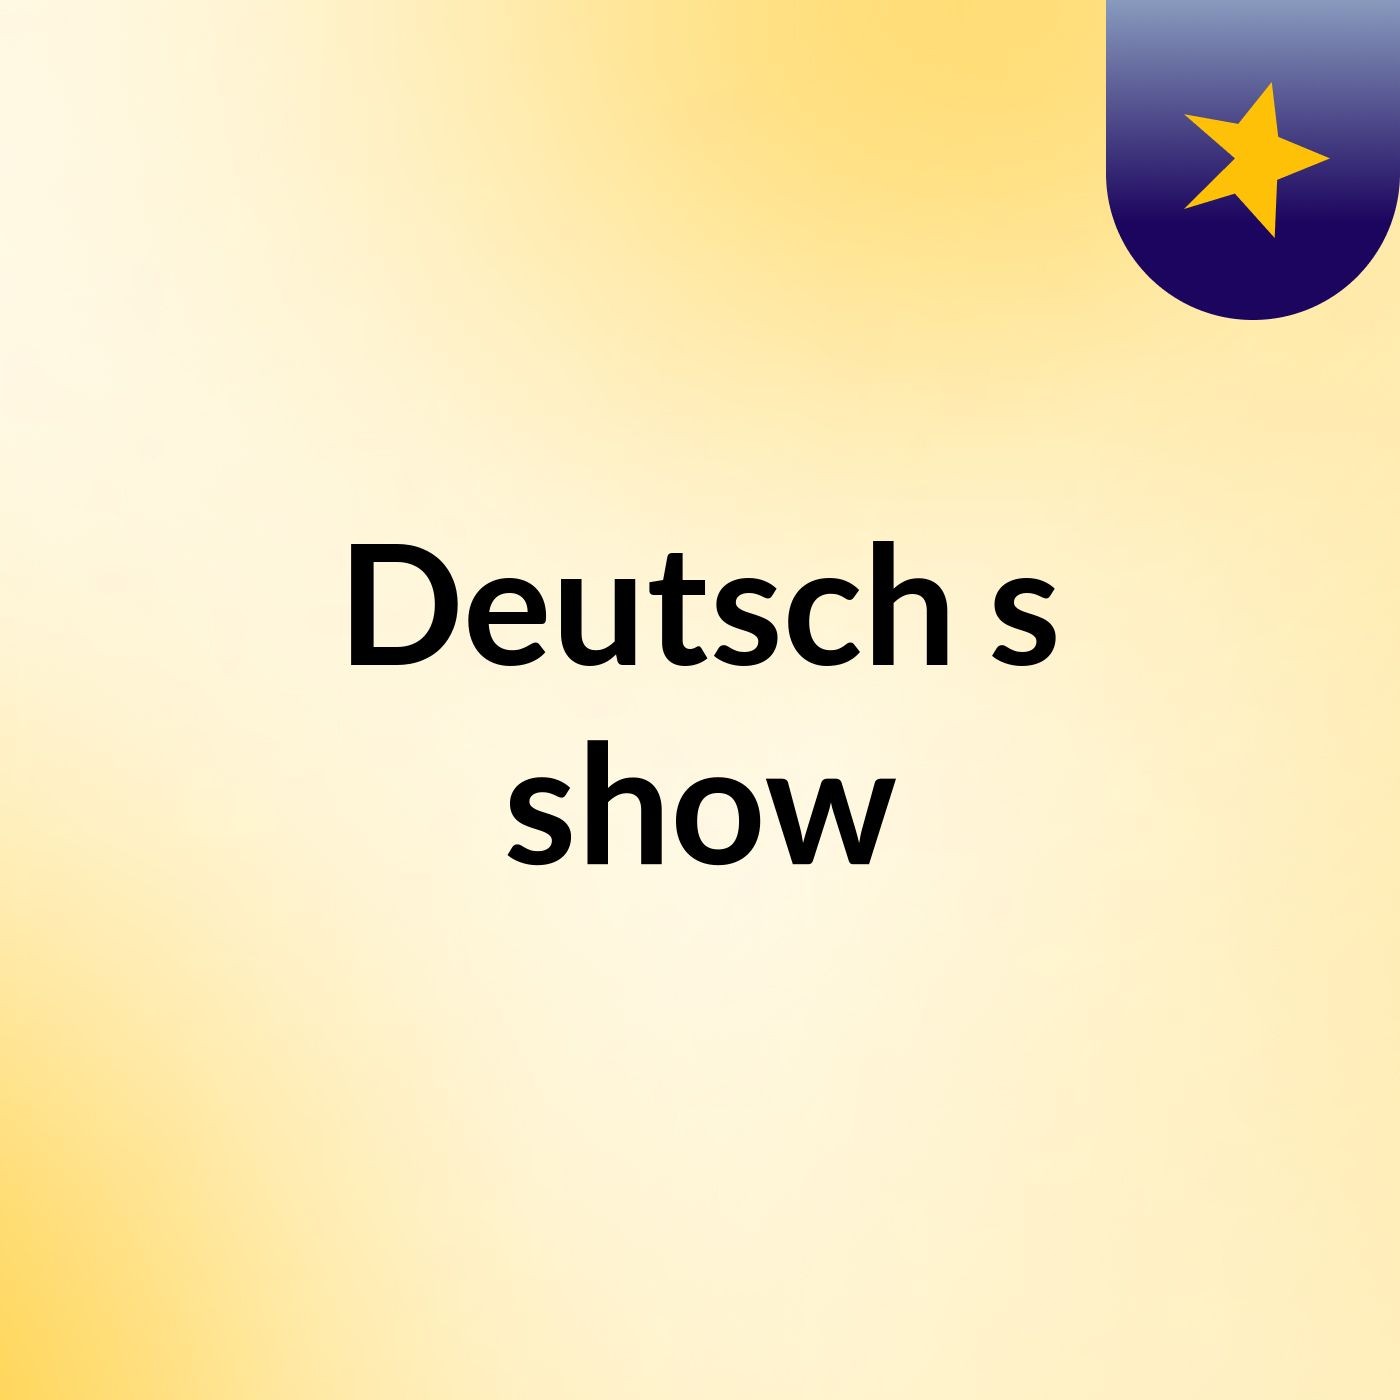 Deutsch's show